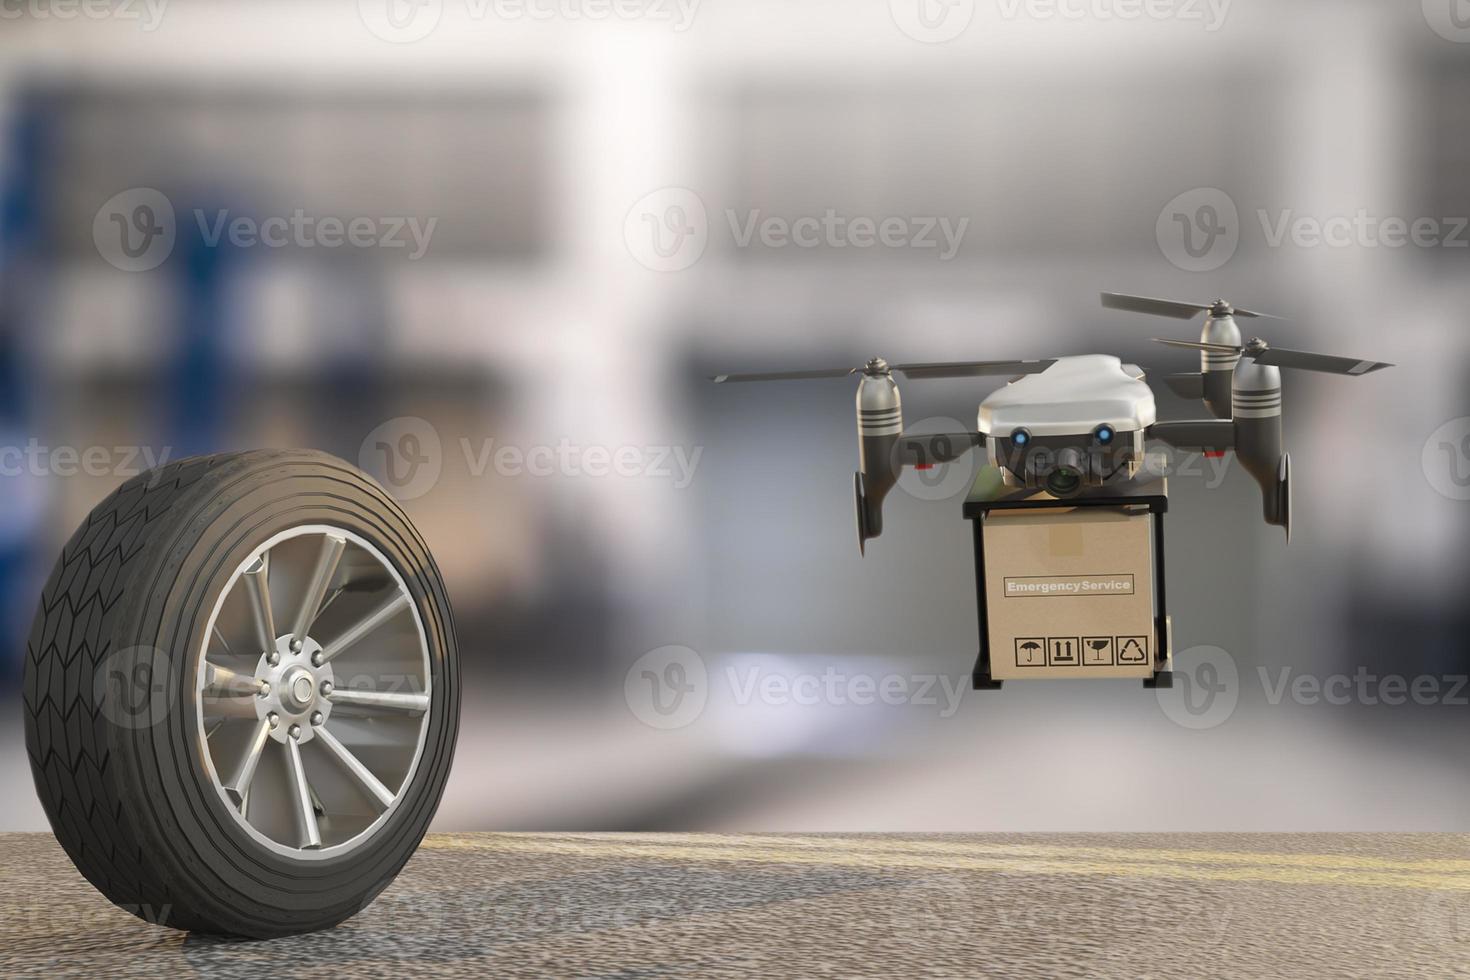 Drohne mit Reifenauto messen Menge aufgeblasenen Gummireifencar.close up Handhaltemaschine aufgeblasenes Manometer für Autoreifendruckmessung für Automobile foto